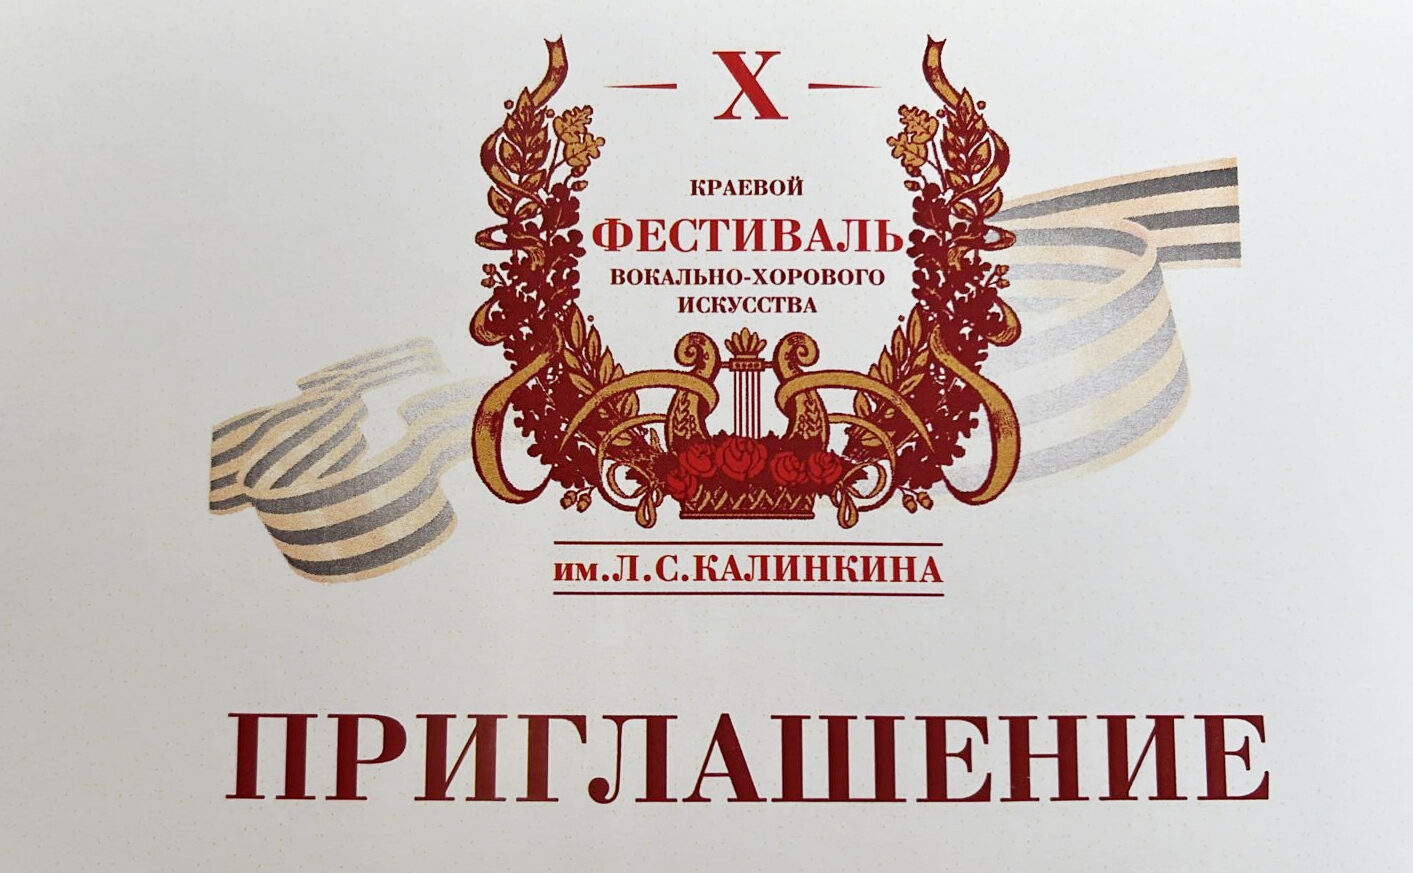 Праздничным гала-концертом завершится X краевой фестиваль вокально-хорового искусства имени Л.С. Калинкина